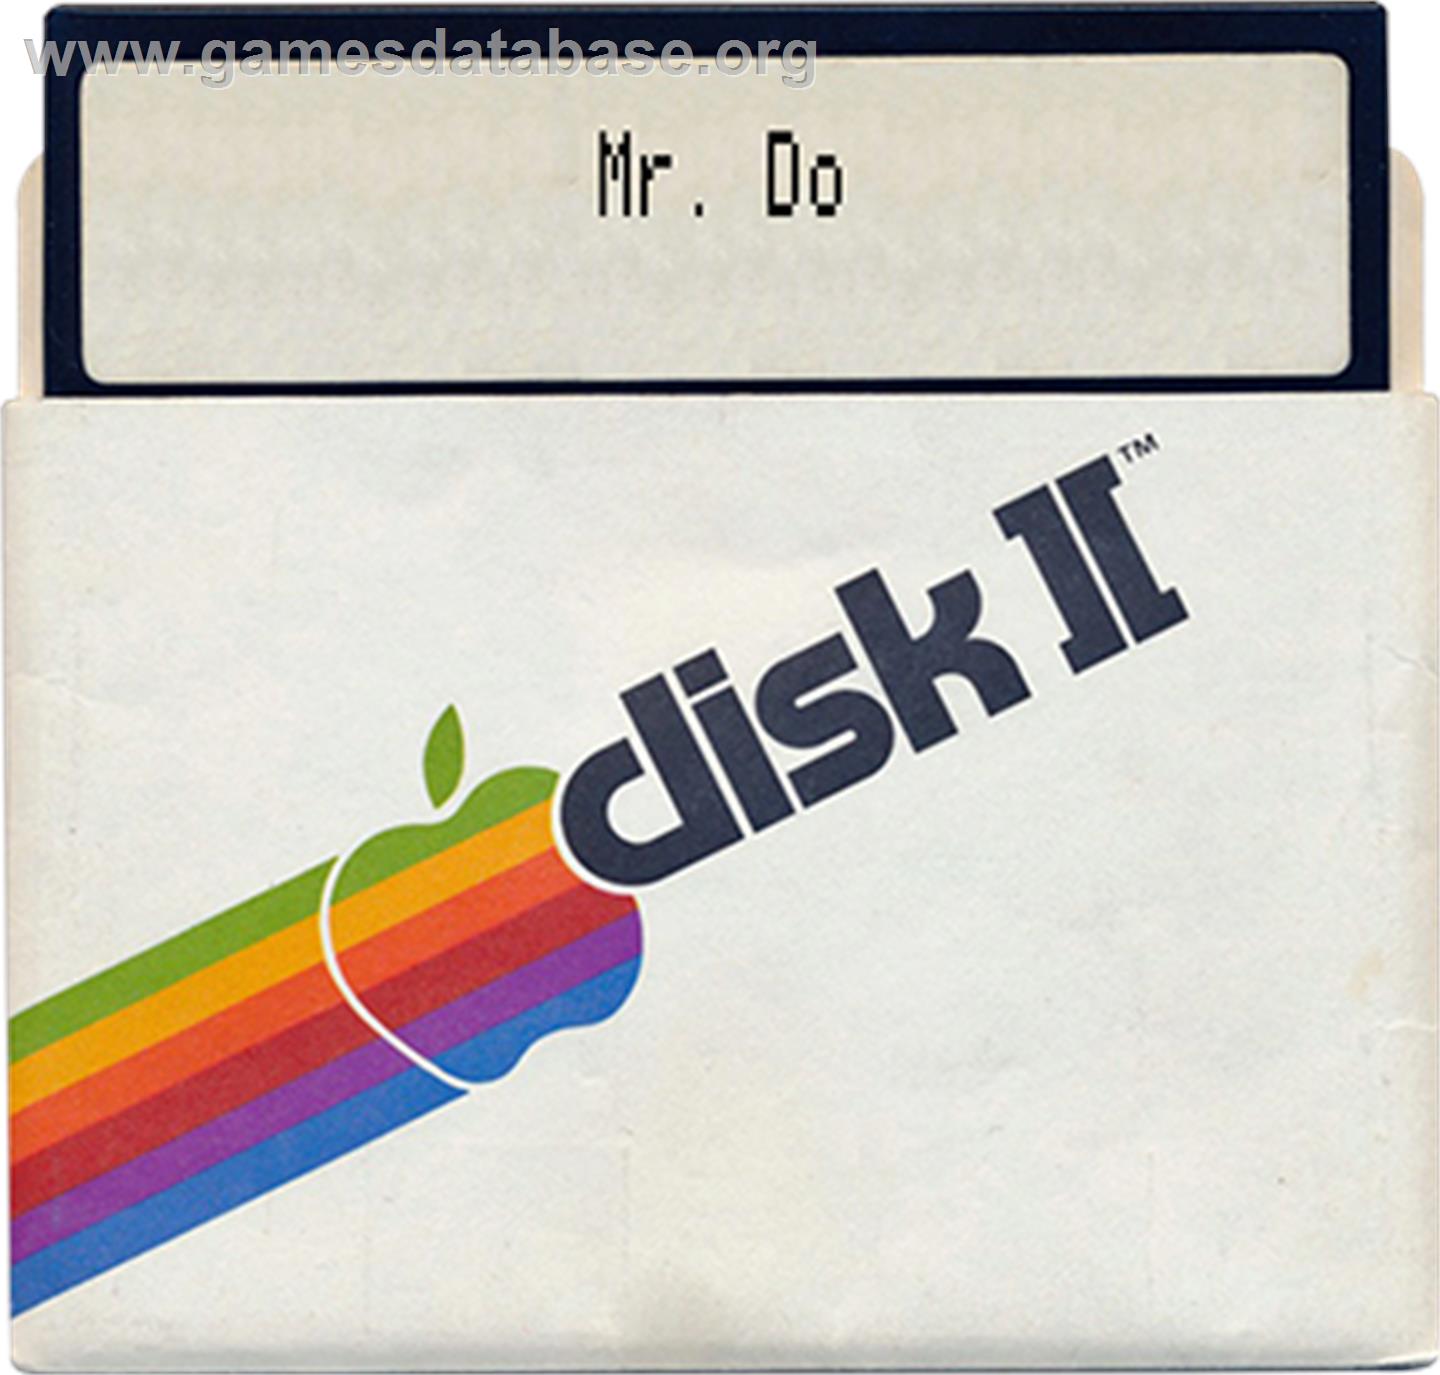 Mr. Do! - Apple II - Artwork - Disc